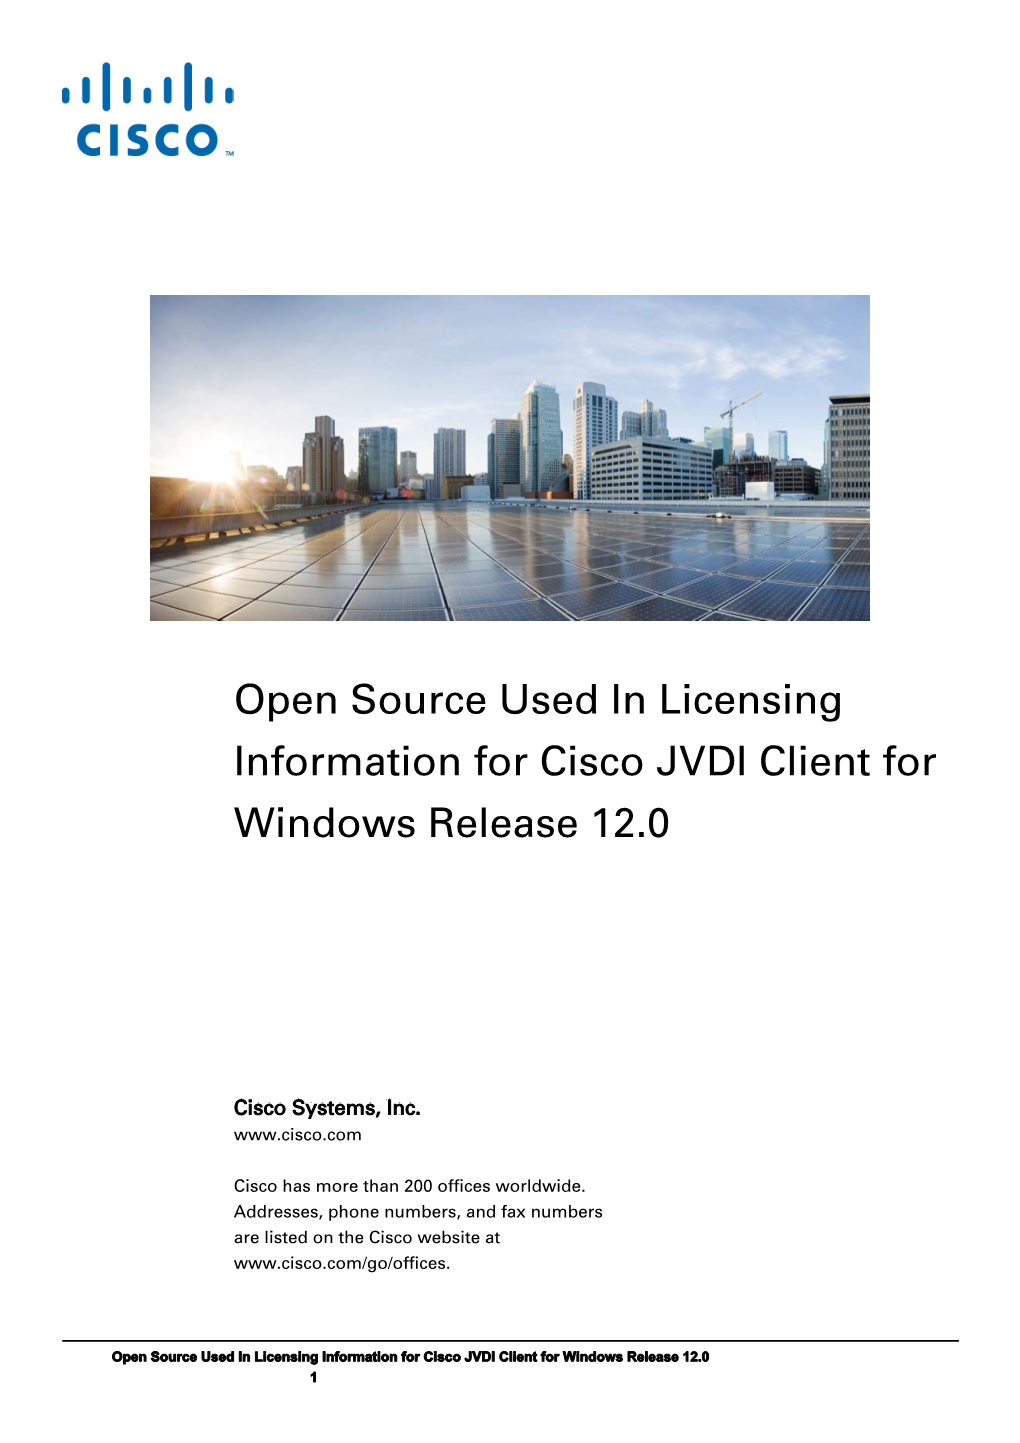 Licensing Information for Cisco JVDI Client Release 12.0